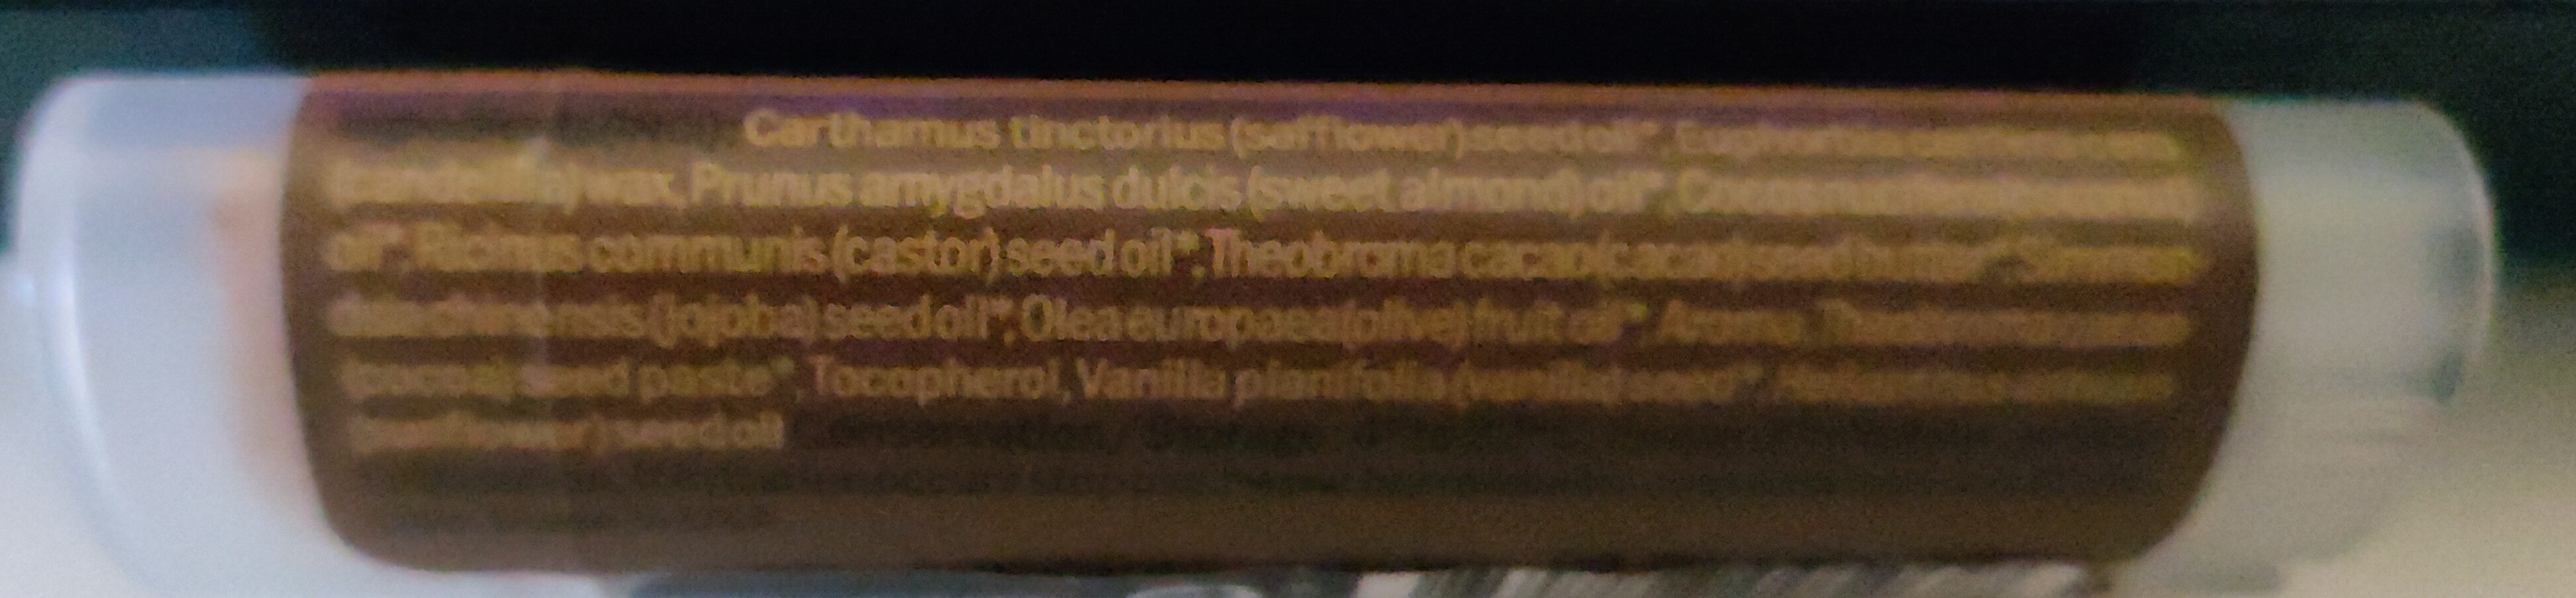 Baume à lèvres chocolat - Ingredientes - fr